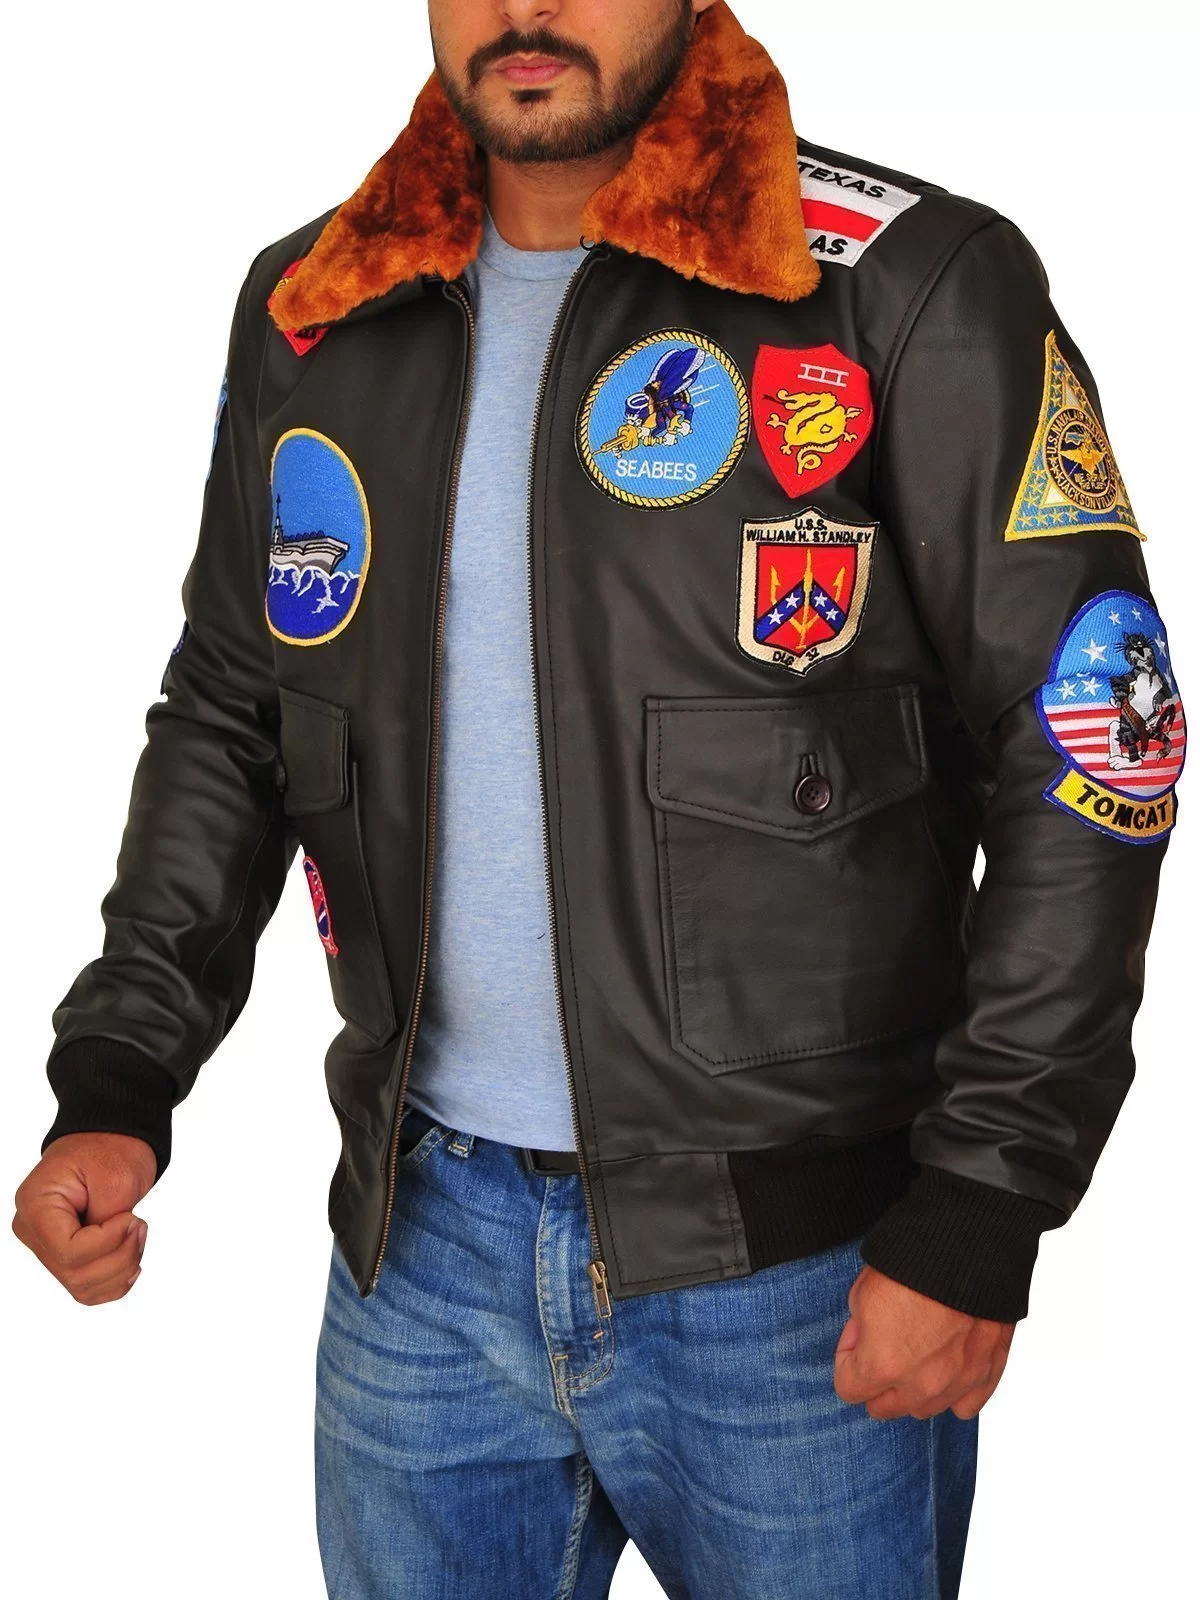 Tom Cruise Top Gun Jacket | Universal Jacket